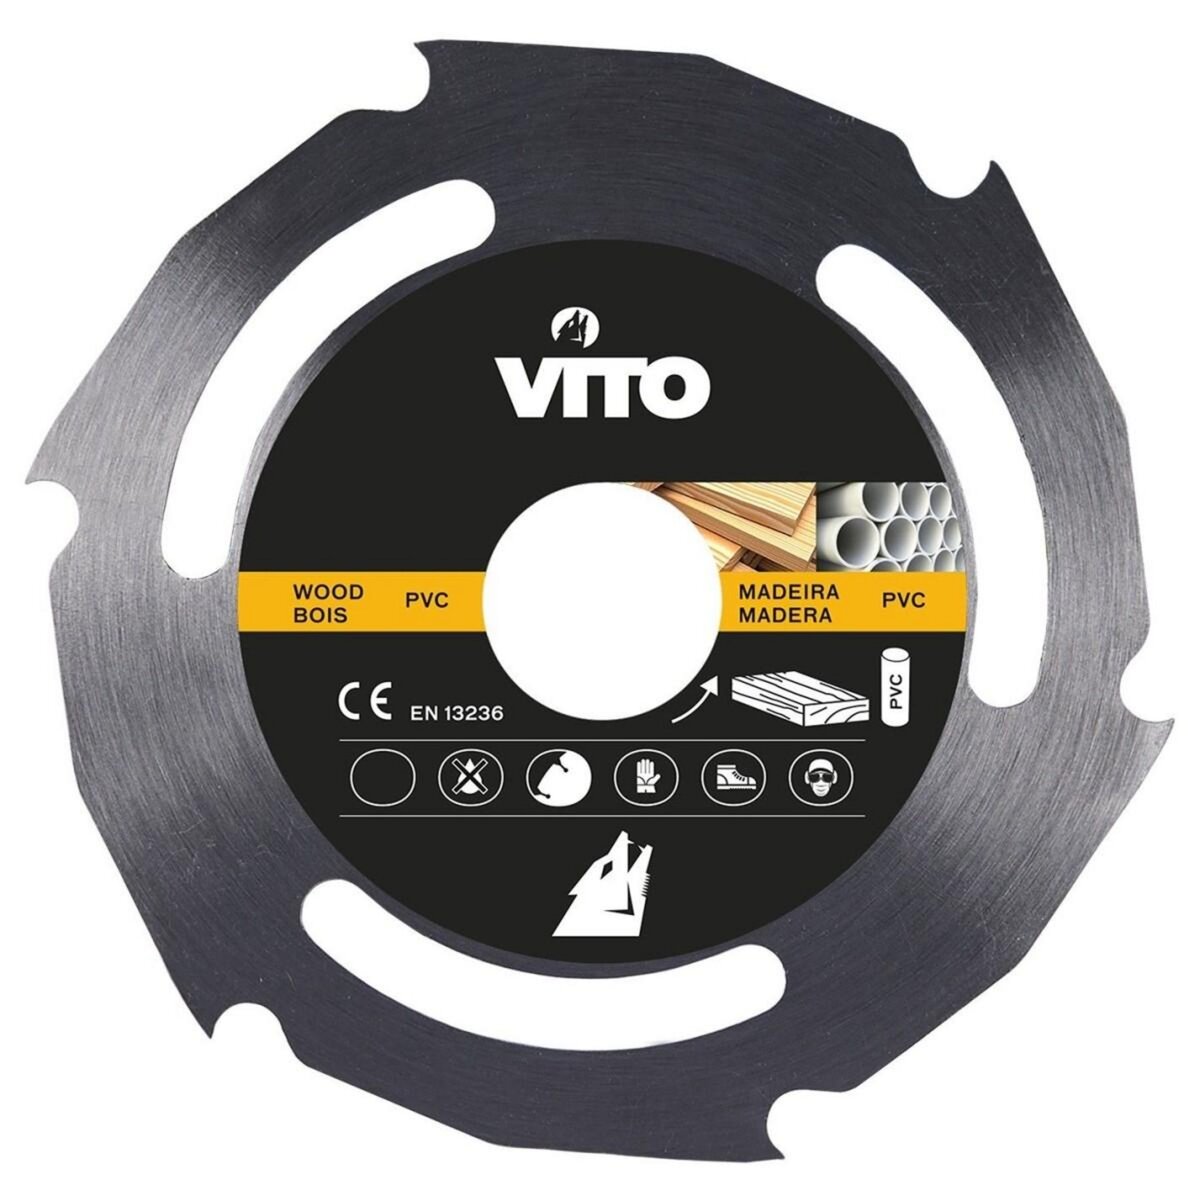 VITO Pro-Power Disque coupe bois et PVC pour Meuleuse 115mm Alesage 22.5mm  Haute résistance pas cher 